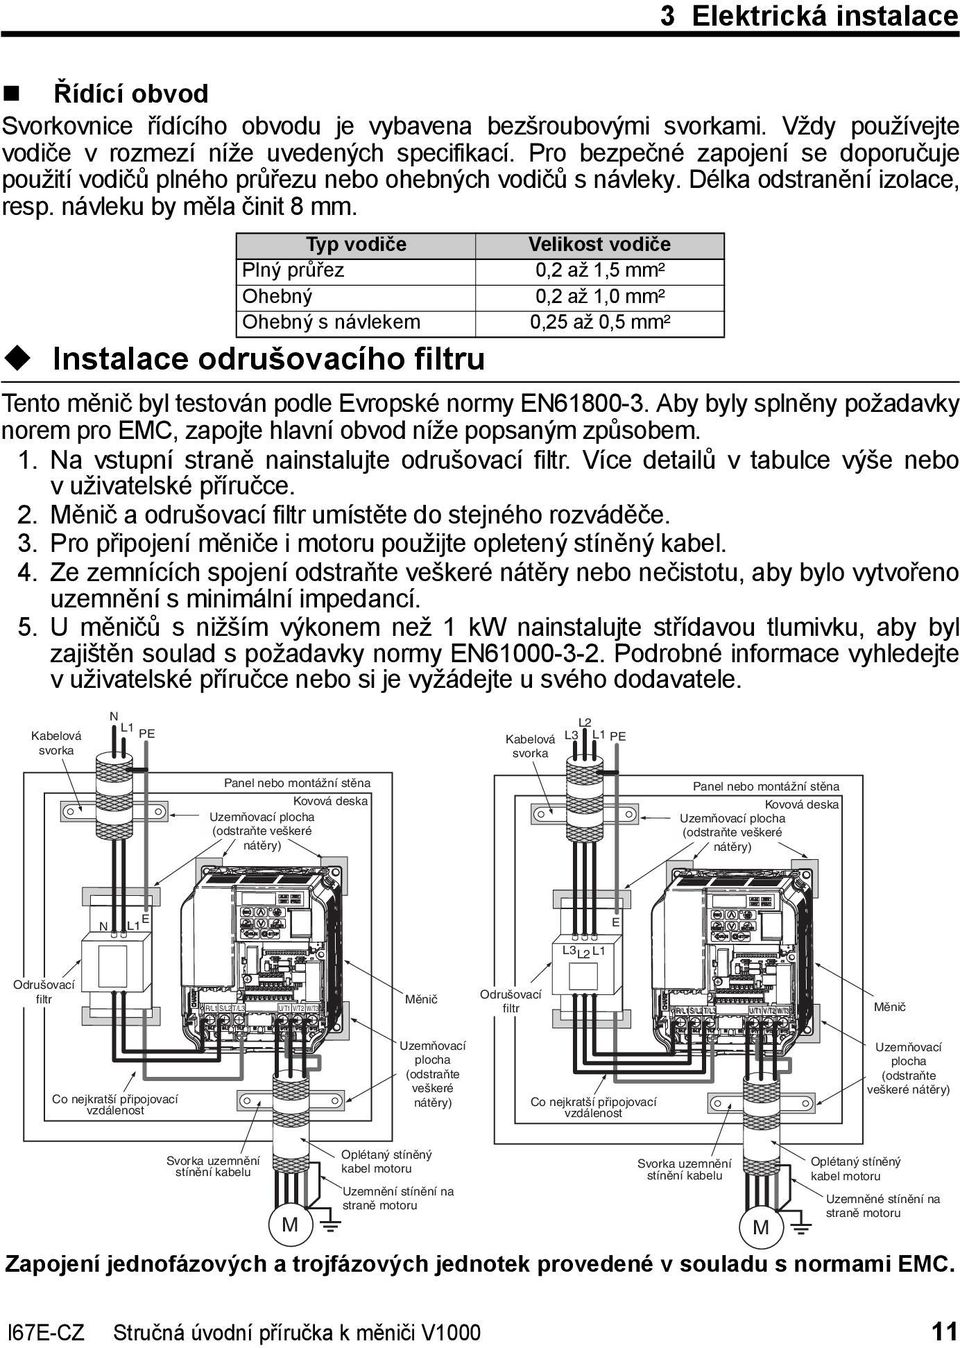 Typ vodiče Plný průřez Ohebný Ohebný s návlekem Instalace odrušovacího filtru Velikost vodiče 0,2 až 1,5 mm² 0,2 až 1,0 mm² 0,25 až 0,5 mm² Tento měnič byl testován podle Evropské normy EN61800-3.